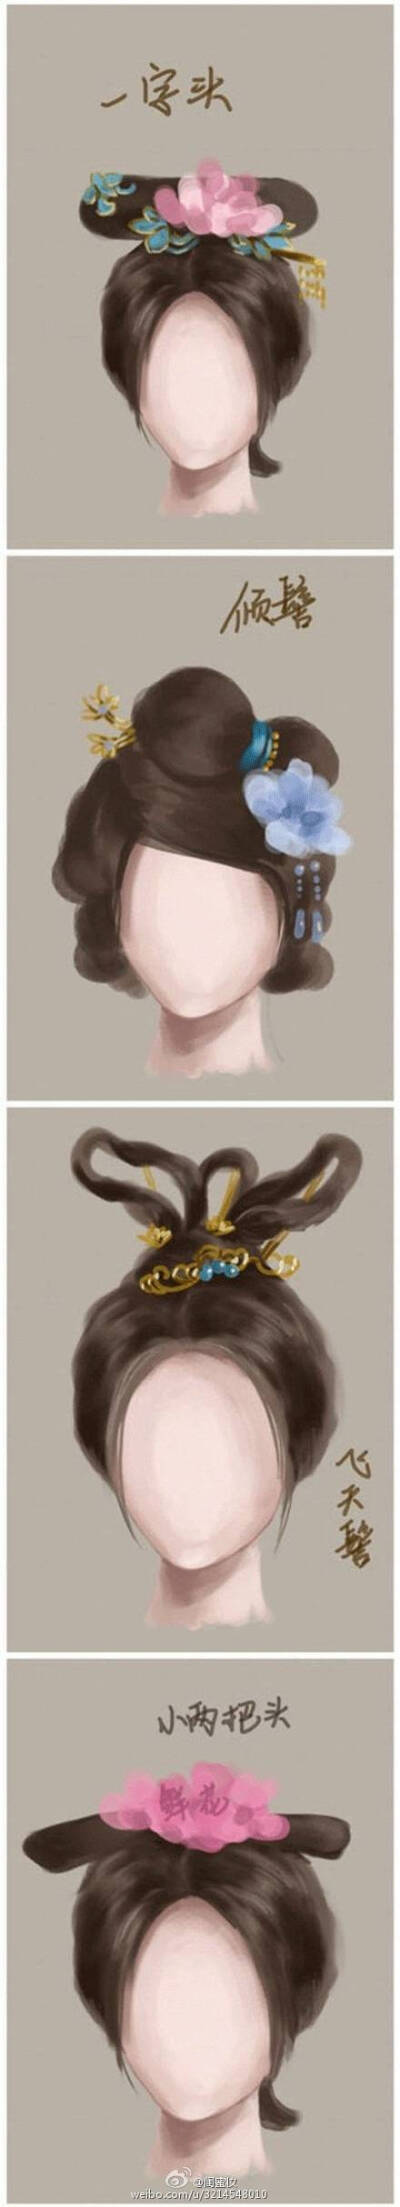 古代女子发型发式名称及参考图样